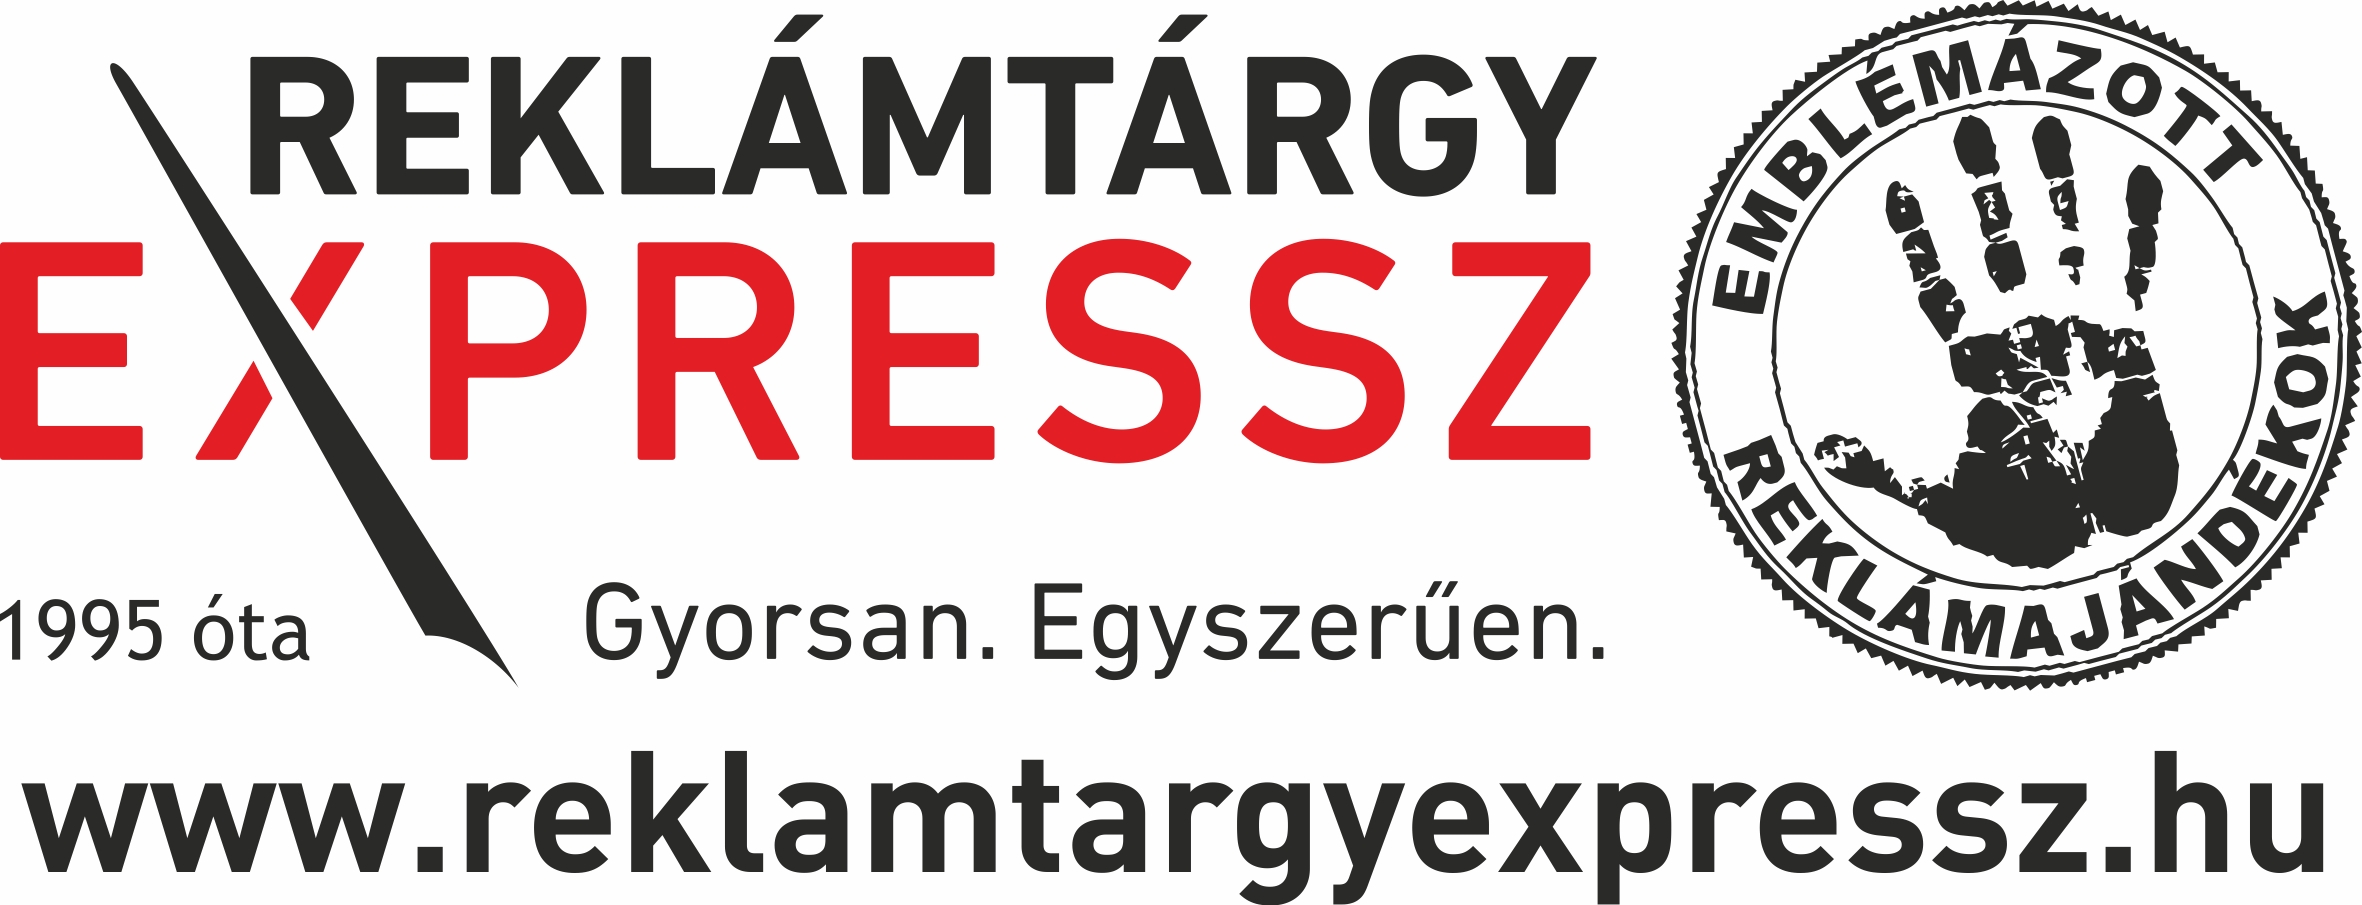 reklamtargy expressz logo